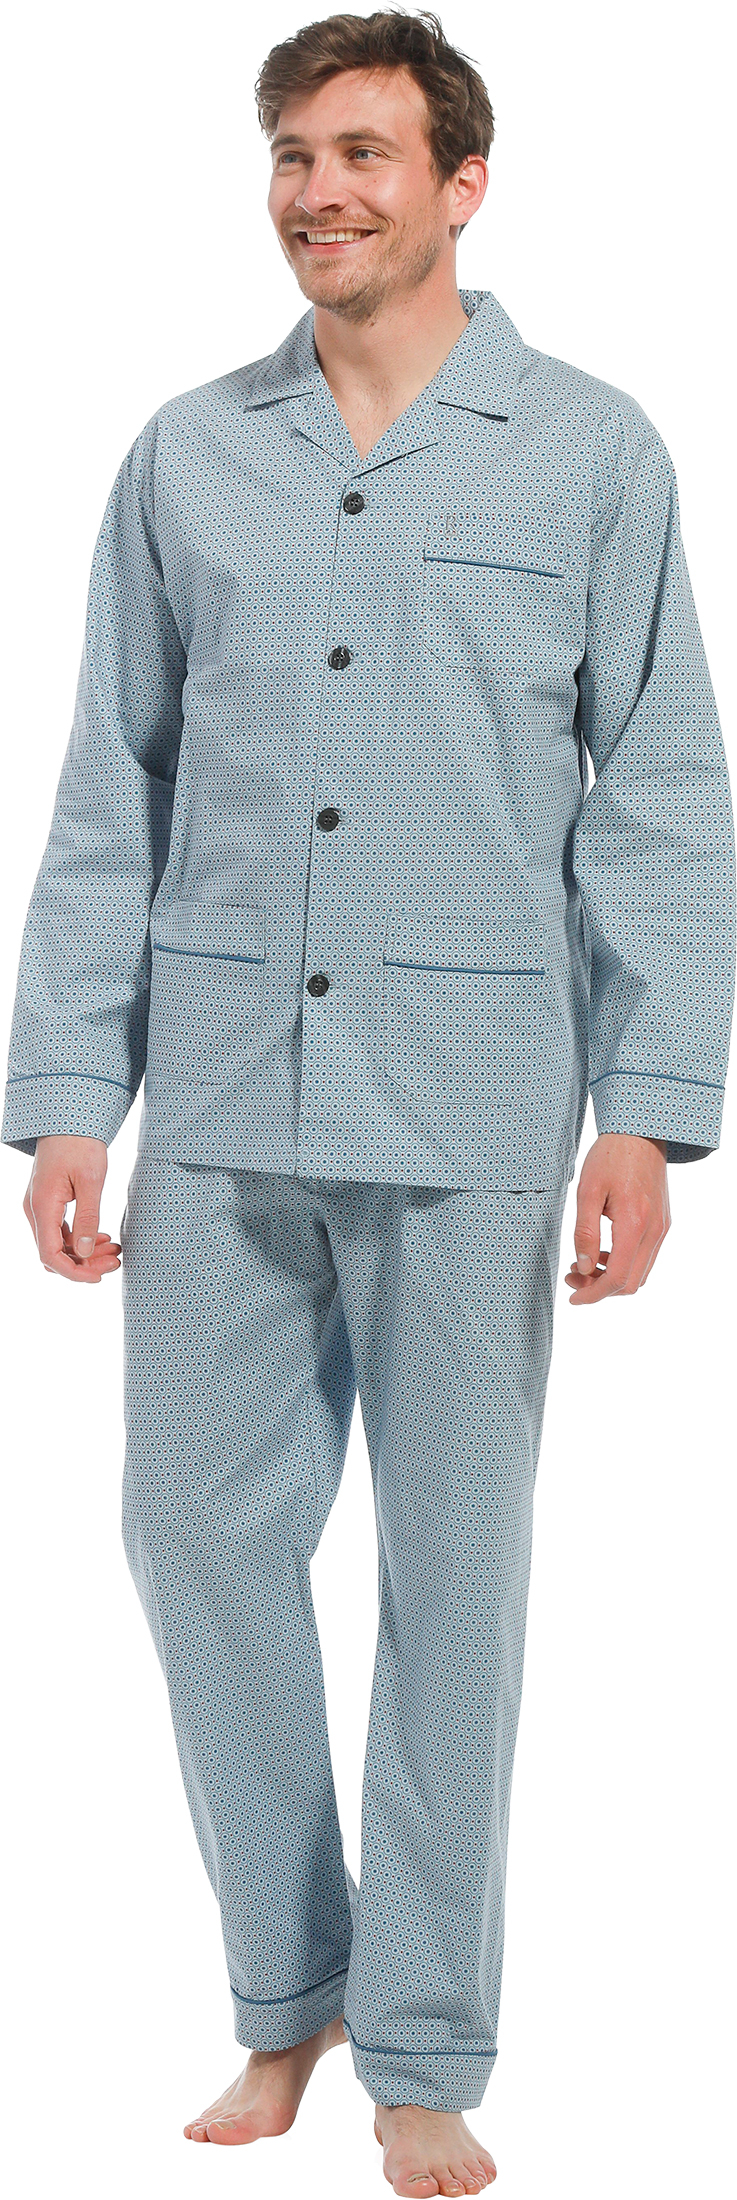 Robson heren pyjama doorknoop 27221-700-6 - Blauw - M/50